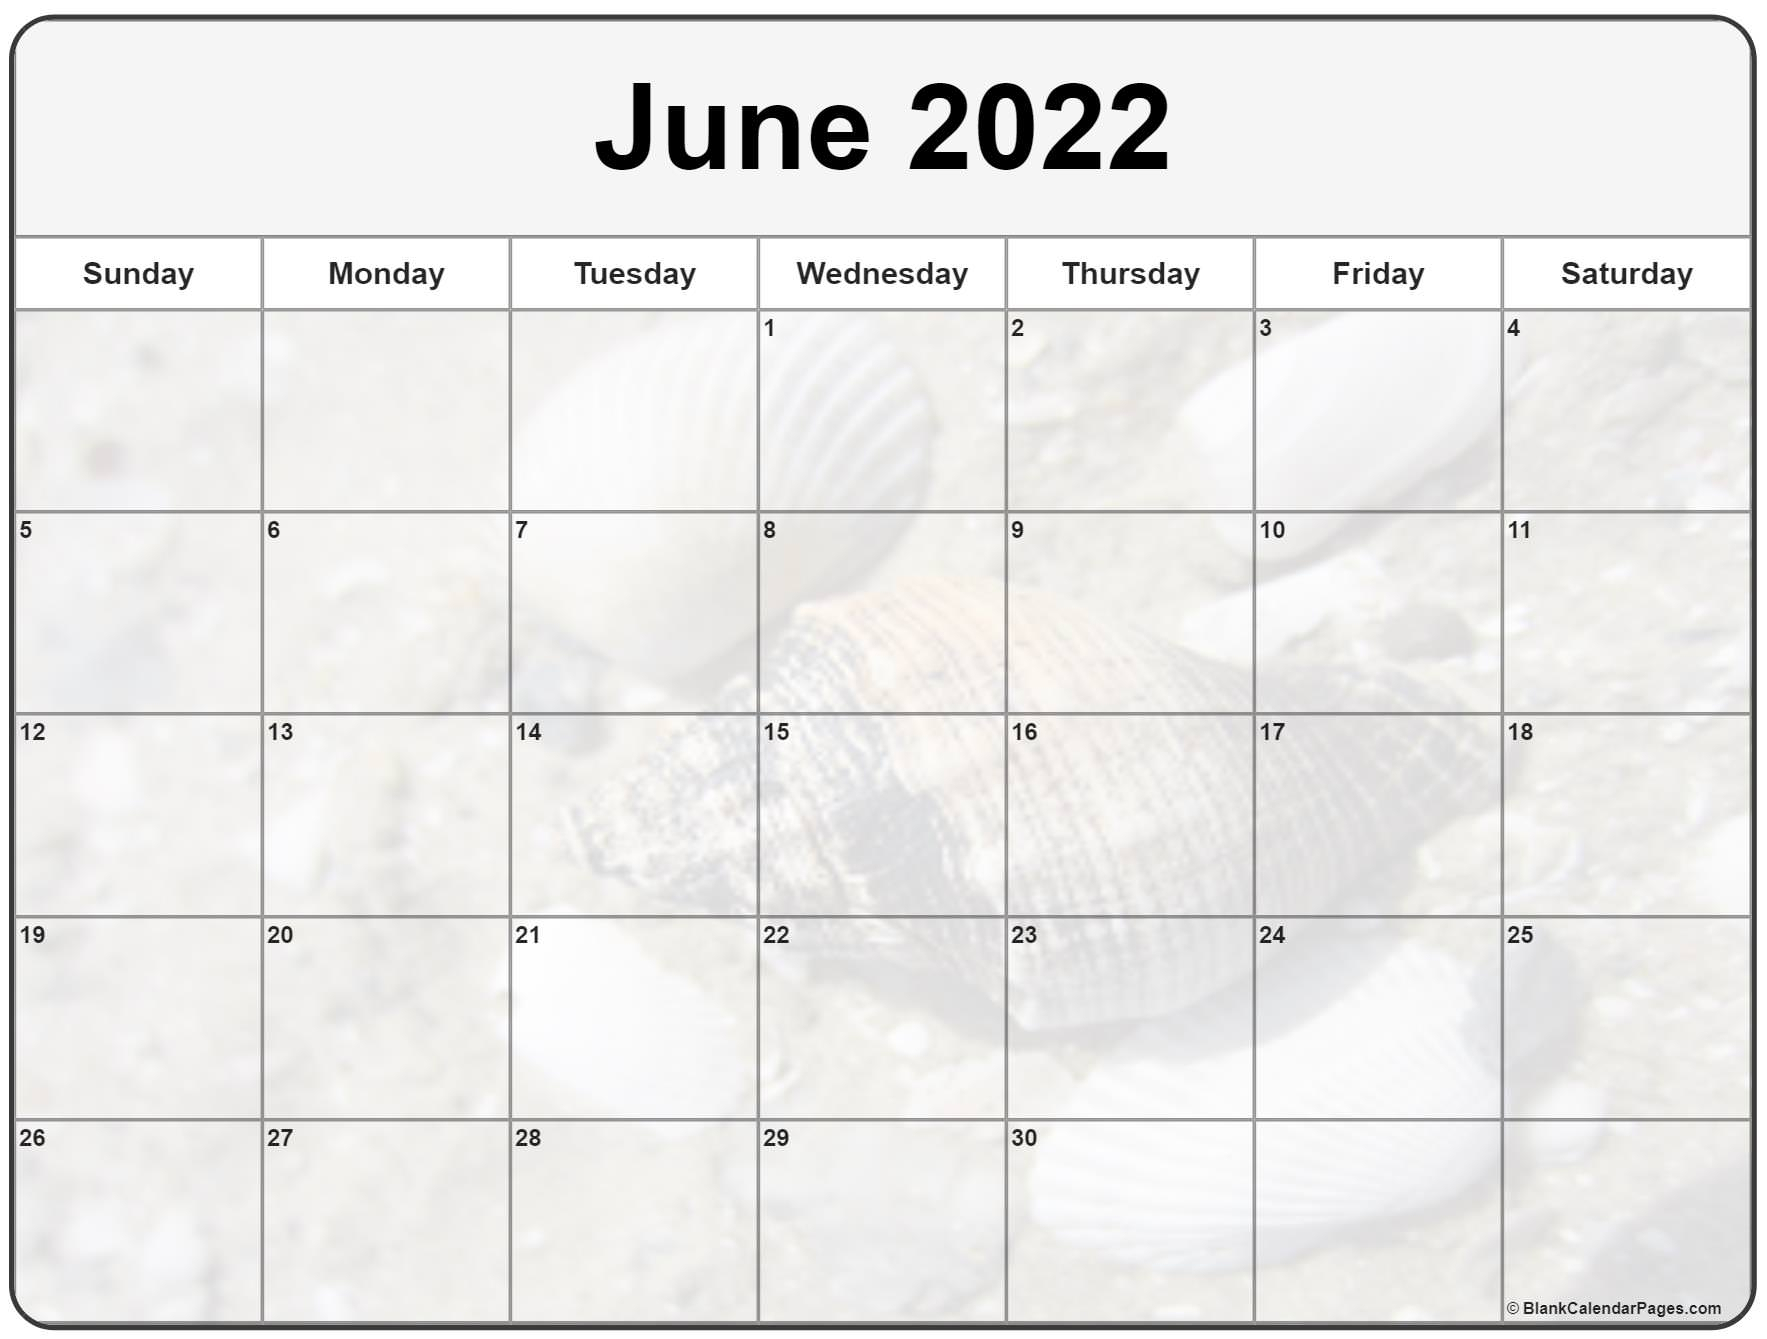 Get June 2022 Football Calendar